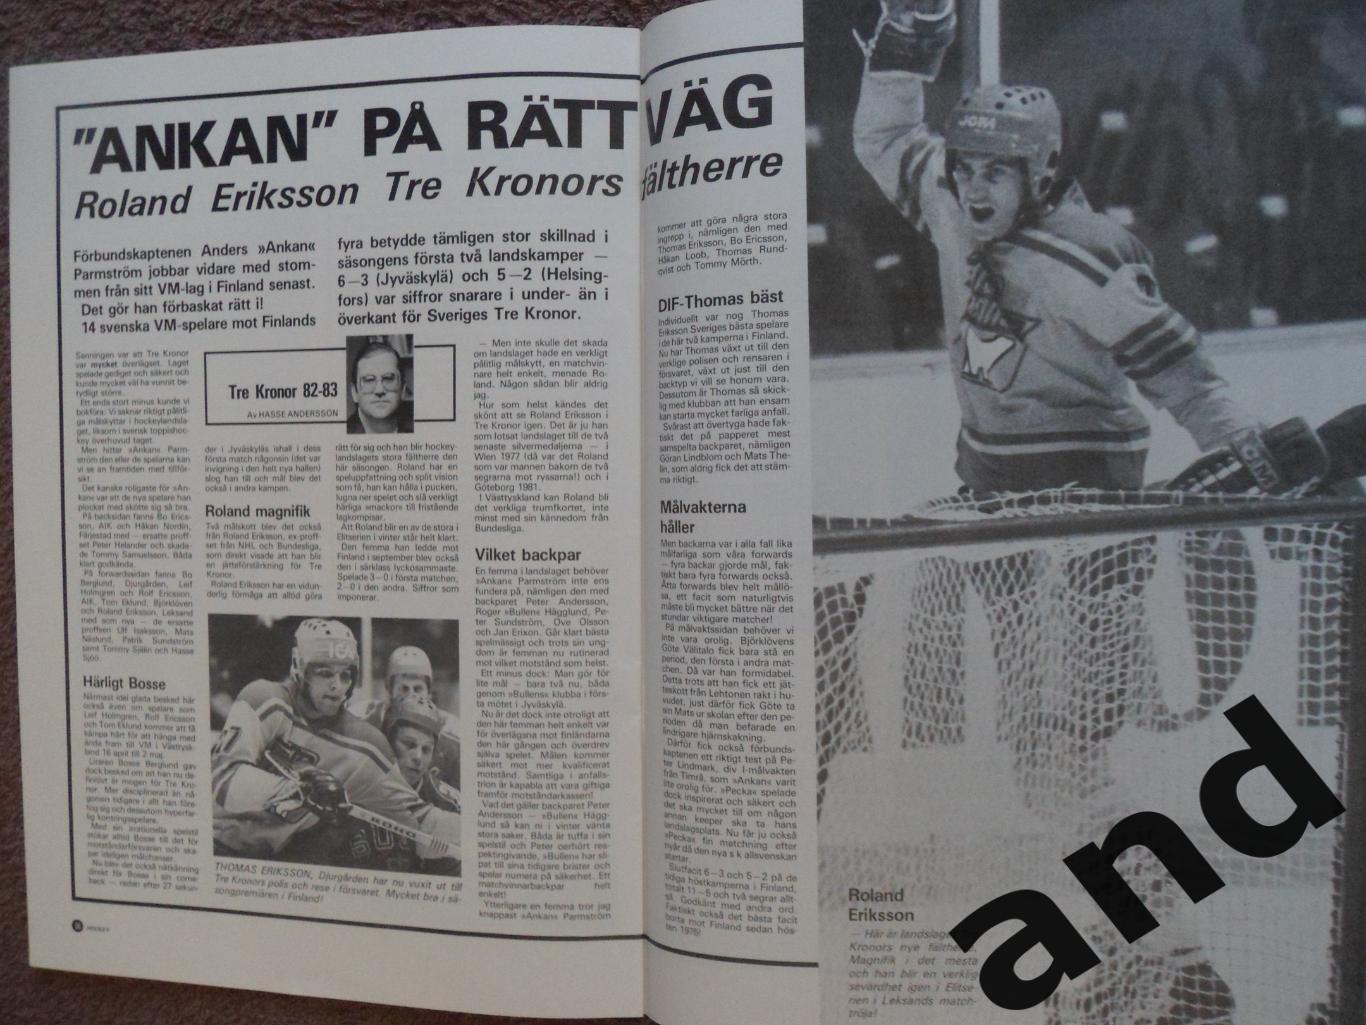 журнал Хоккей (Швеция) № 7 (1982) большой постер Эрикссон 2